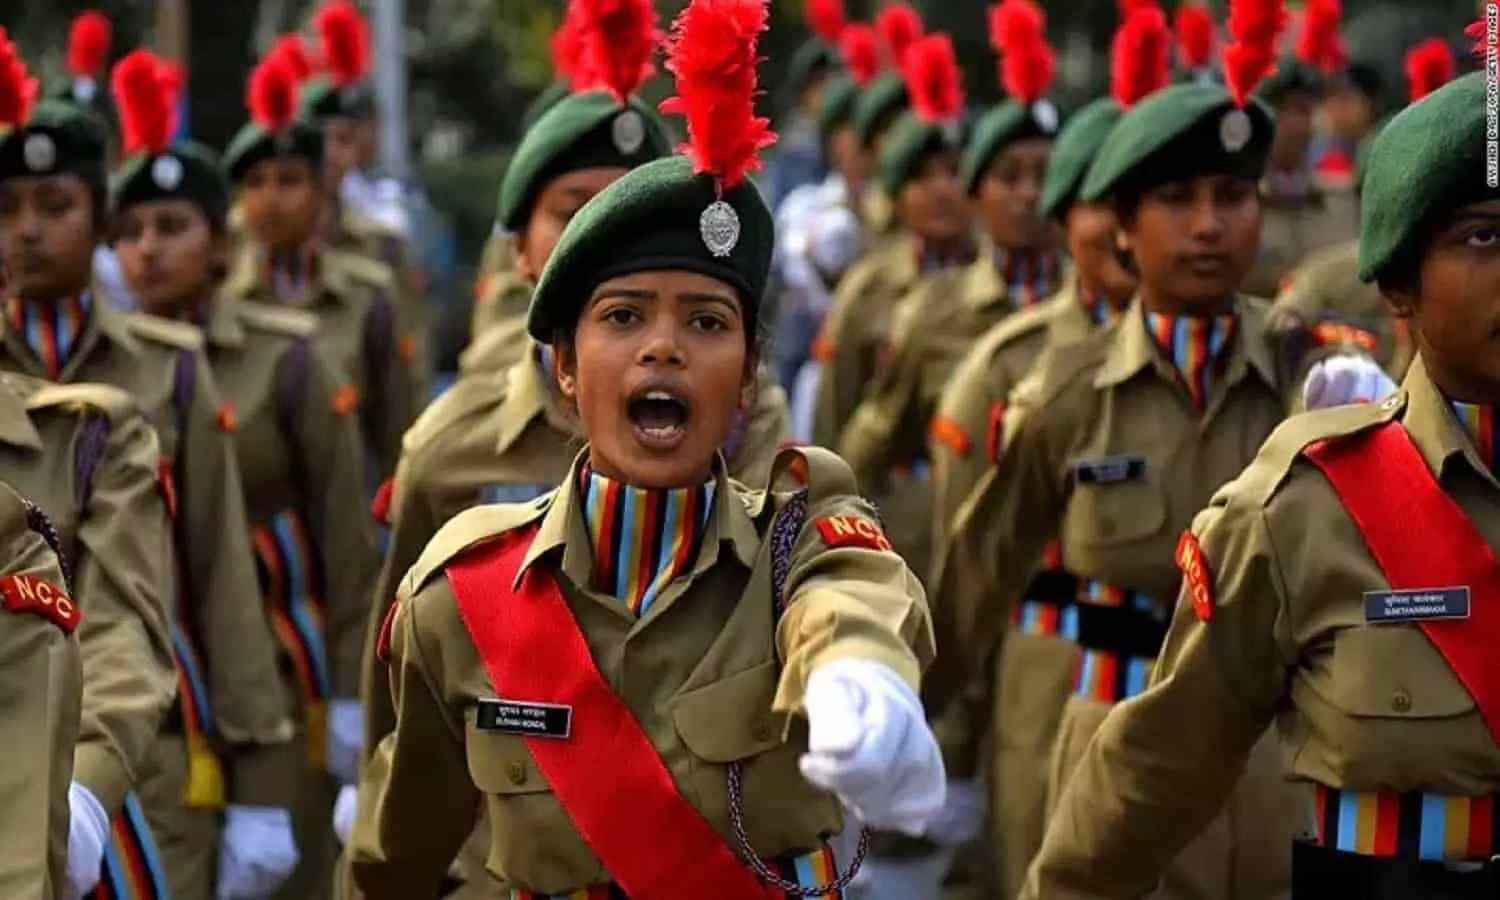 Agnipath Scheme: 19 से 22 तक जबलपुर में हेगी अग्निपथ योजना में महिला सैन्य भर्ती, जाने जरूरी जानकारी